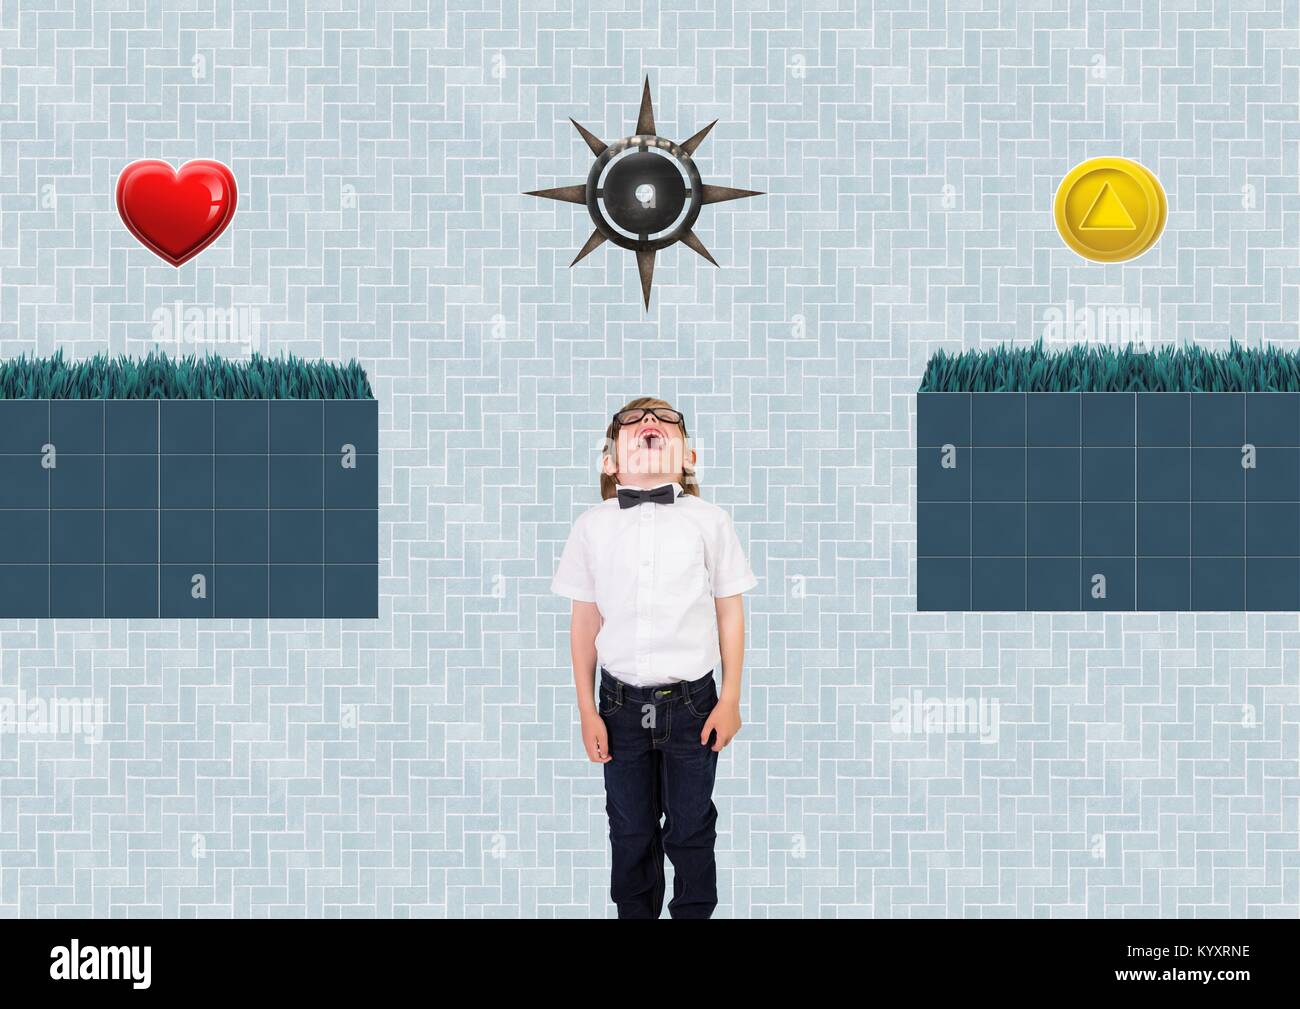 Junge in Computer Game Level mit Collectibles und Traps Stockfoto